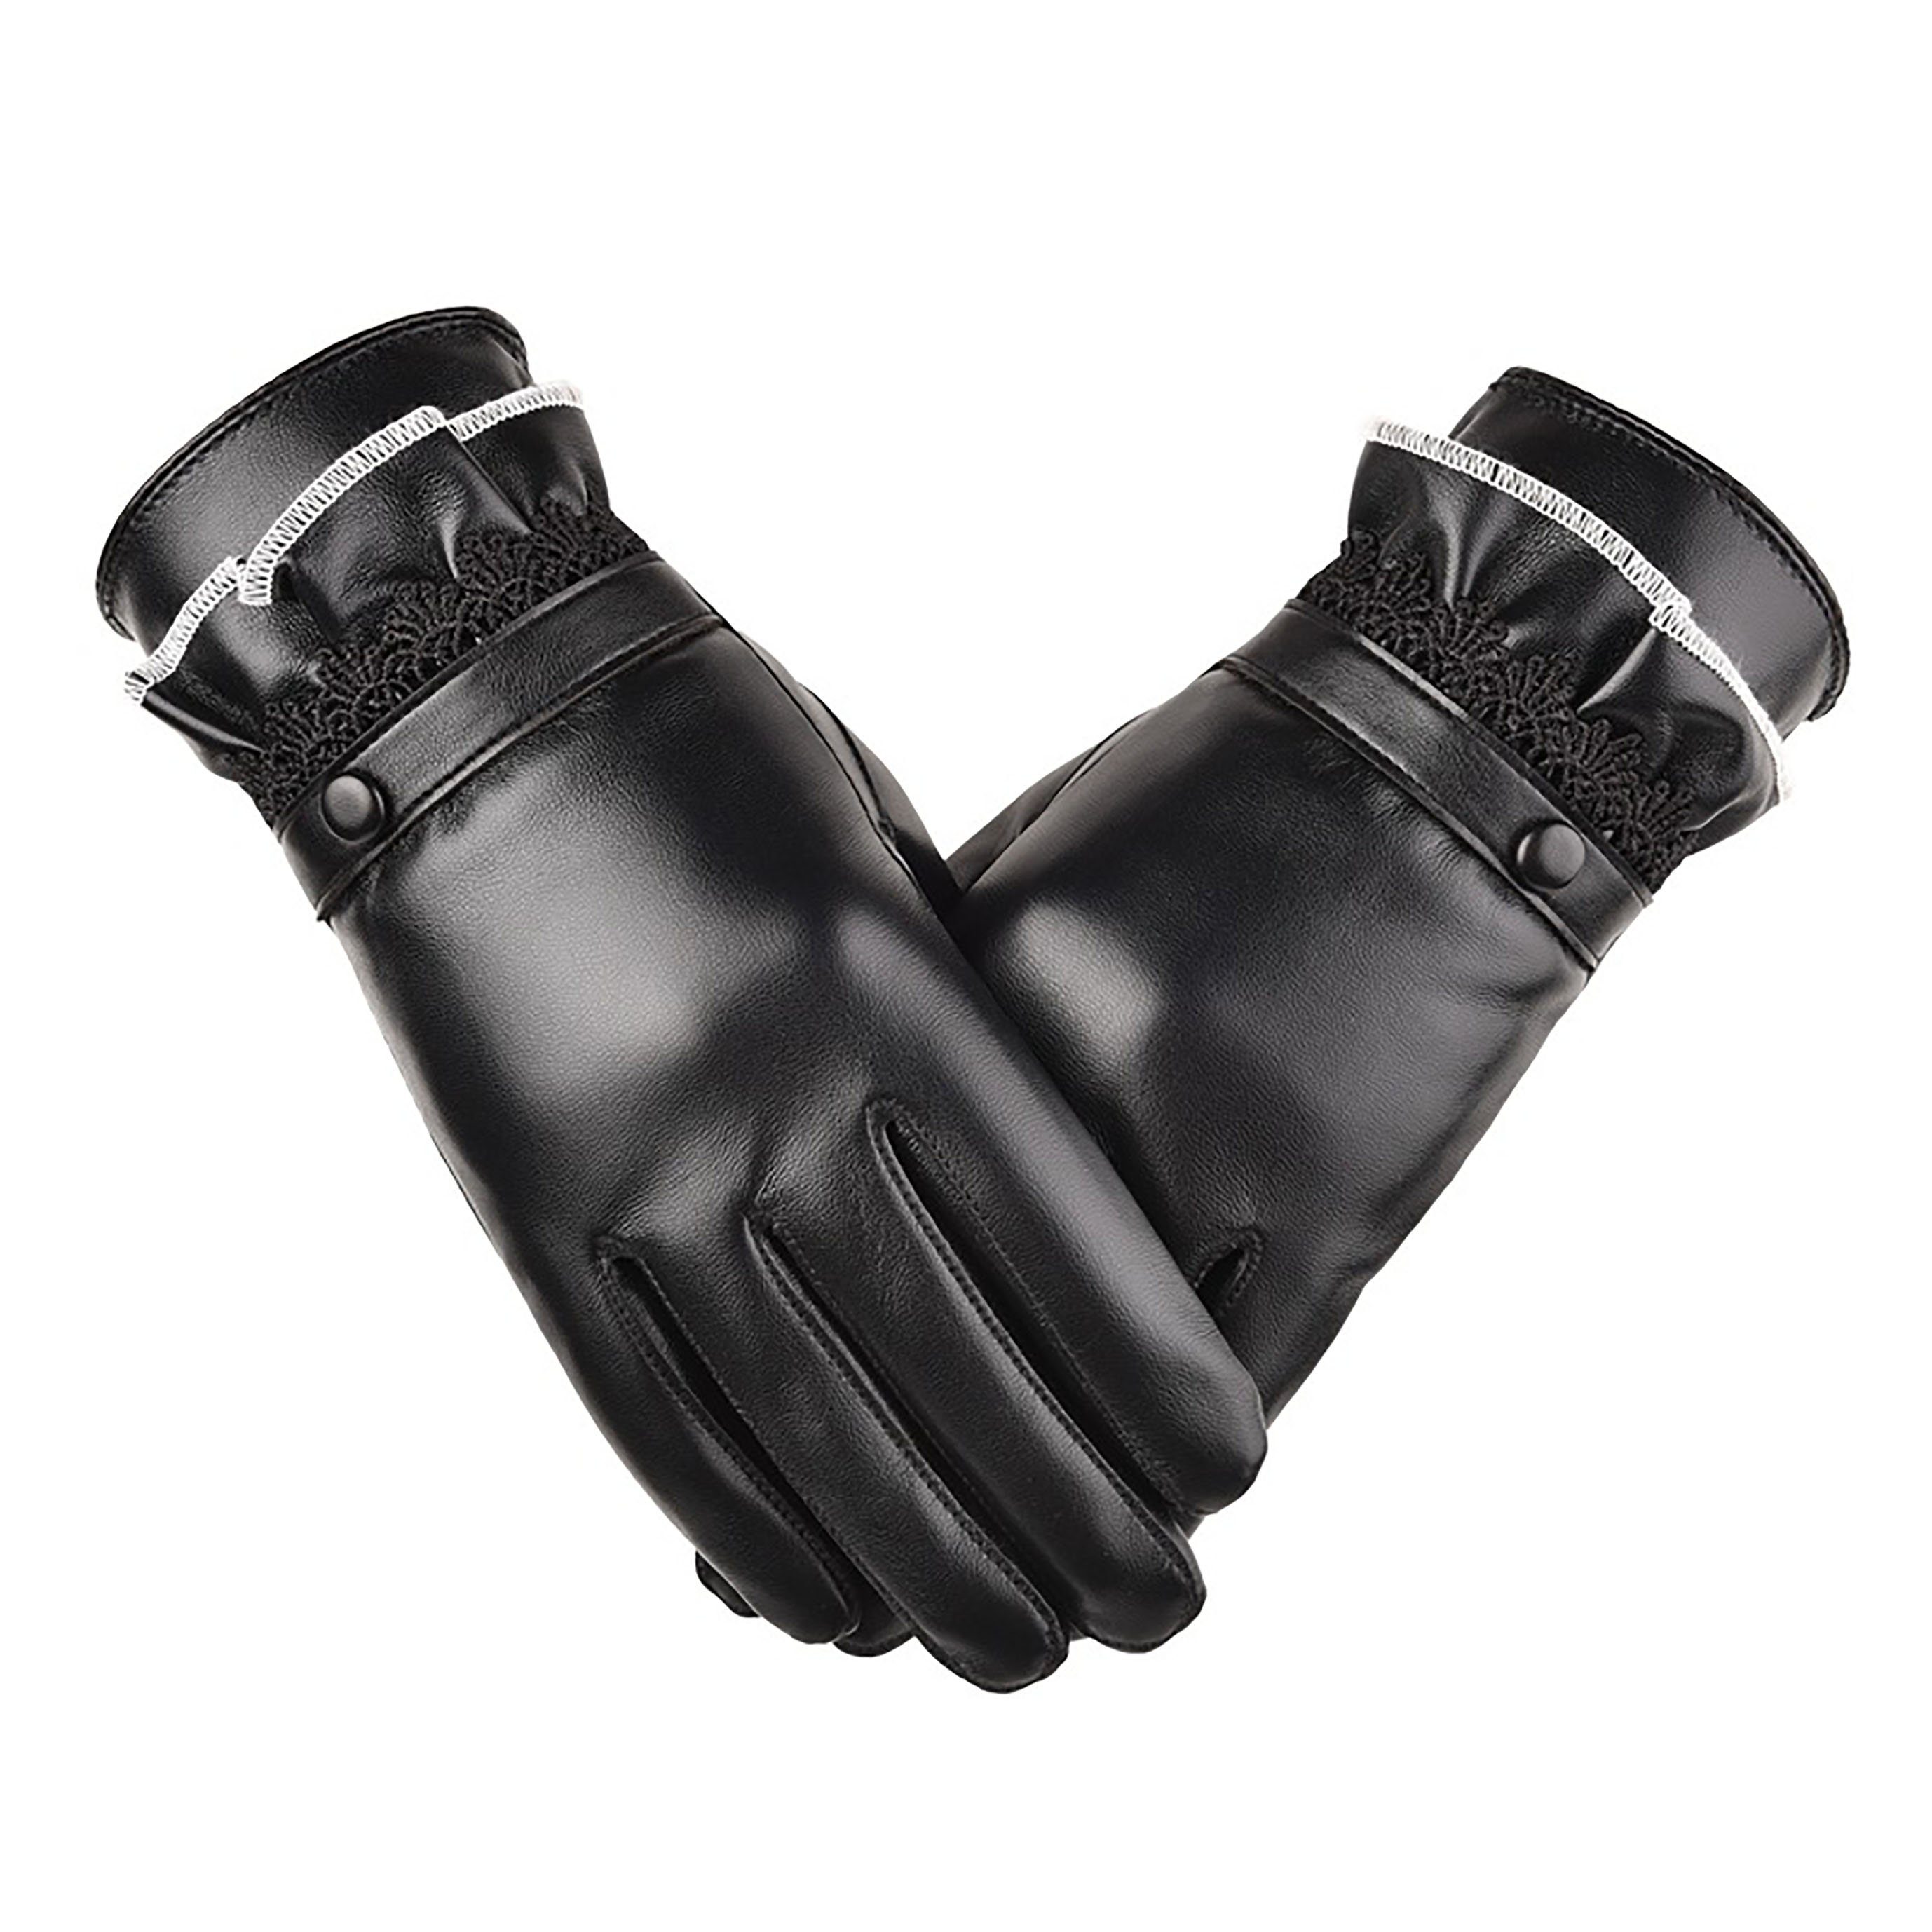 SRRINM Trikot-Handschuhe Warme gepolsterte Lederhandschuhe